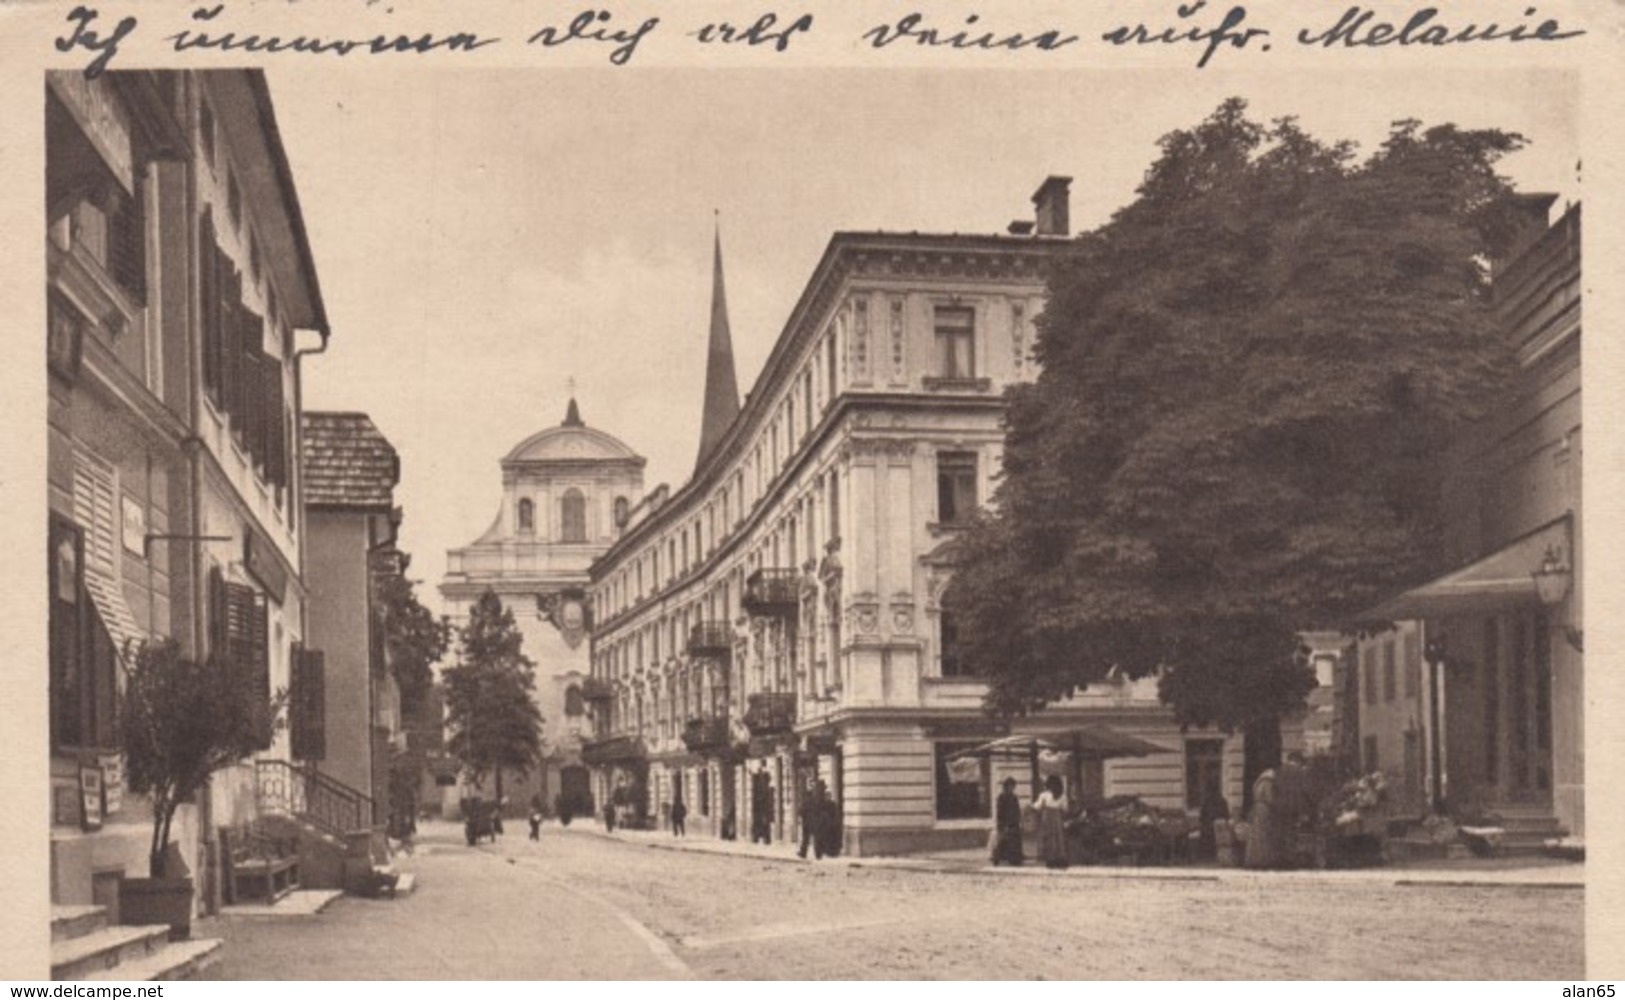 Bad Ischl Austria, Poststrasse Street Scene C1920s Vintage Postcard - Bad Ischl